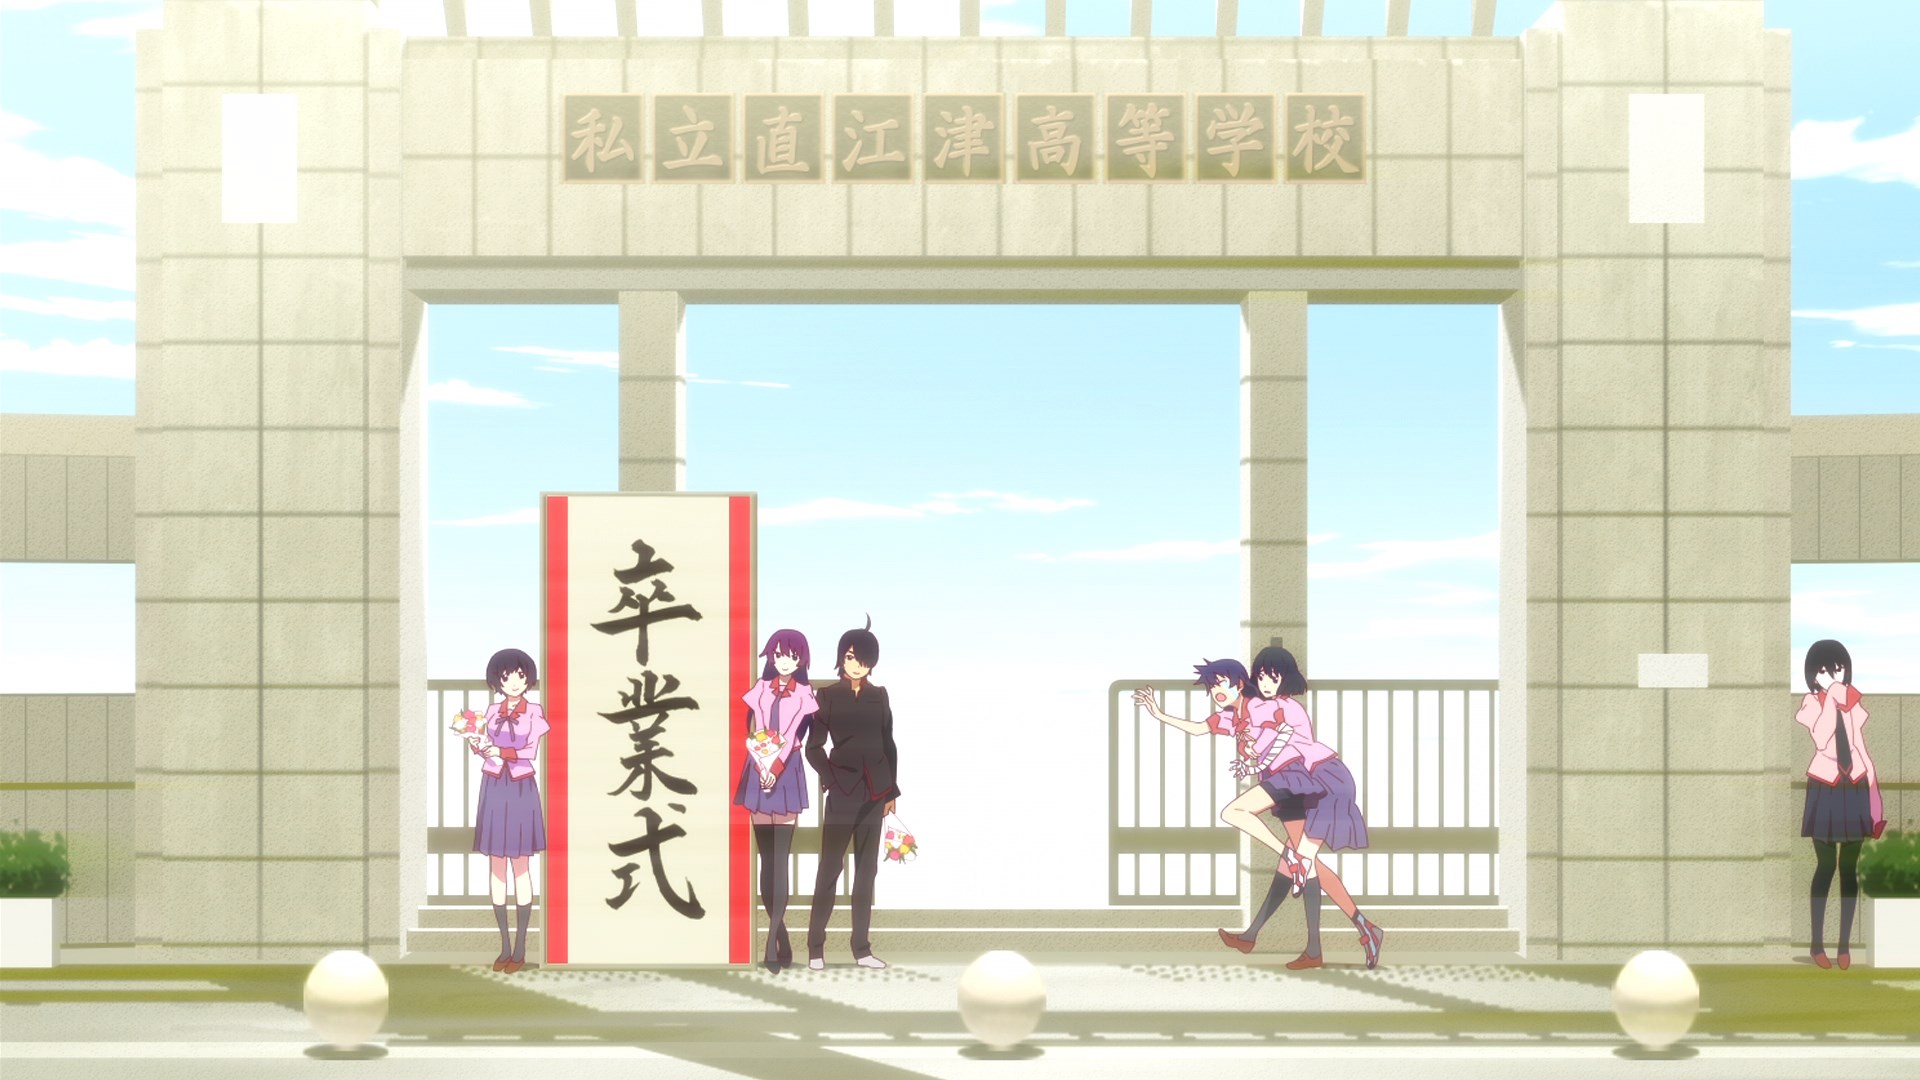 Download mobile wallpaper Anime, Monogatari (Series), Hitagi Senjōgahara, Suruga Kanbaru, Tsubasa Hanekawa, Koyomi Araragi, Ougi Oshino for free.